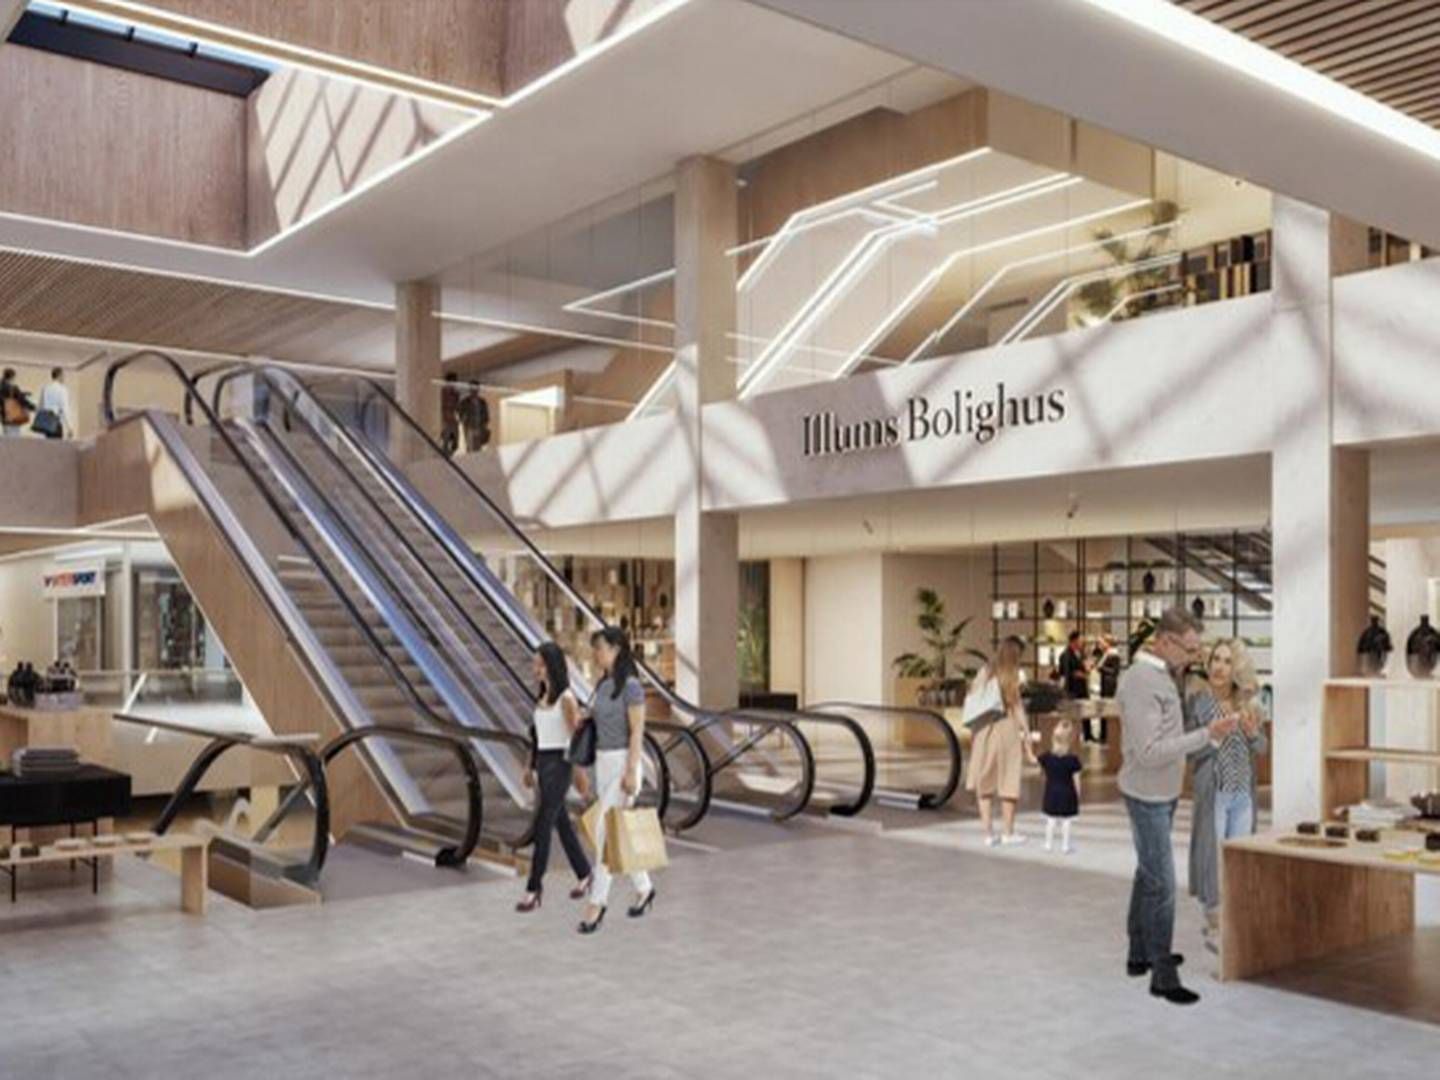 Visualisering af Illums Bolighus' nye 4500 kvm store flag ship store, som i 2023 åbner i Lyngby Stortcenter. | Foto: PR / Danske Shoppingcentre